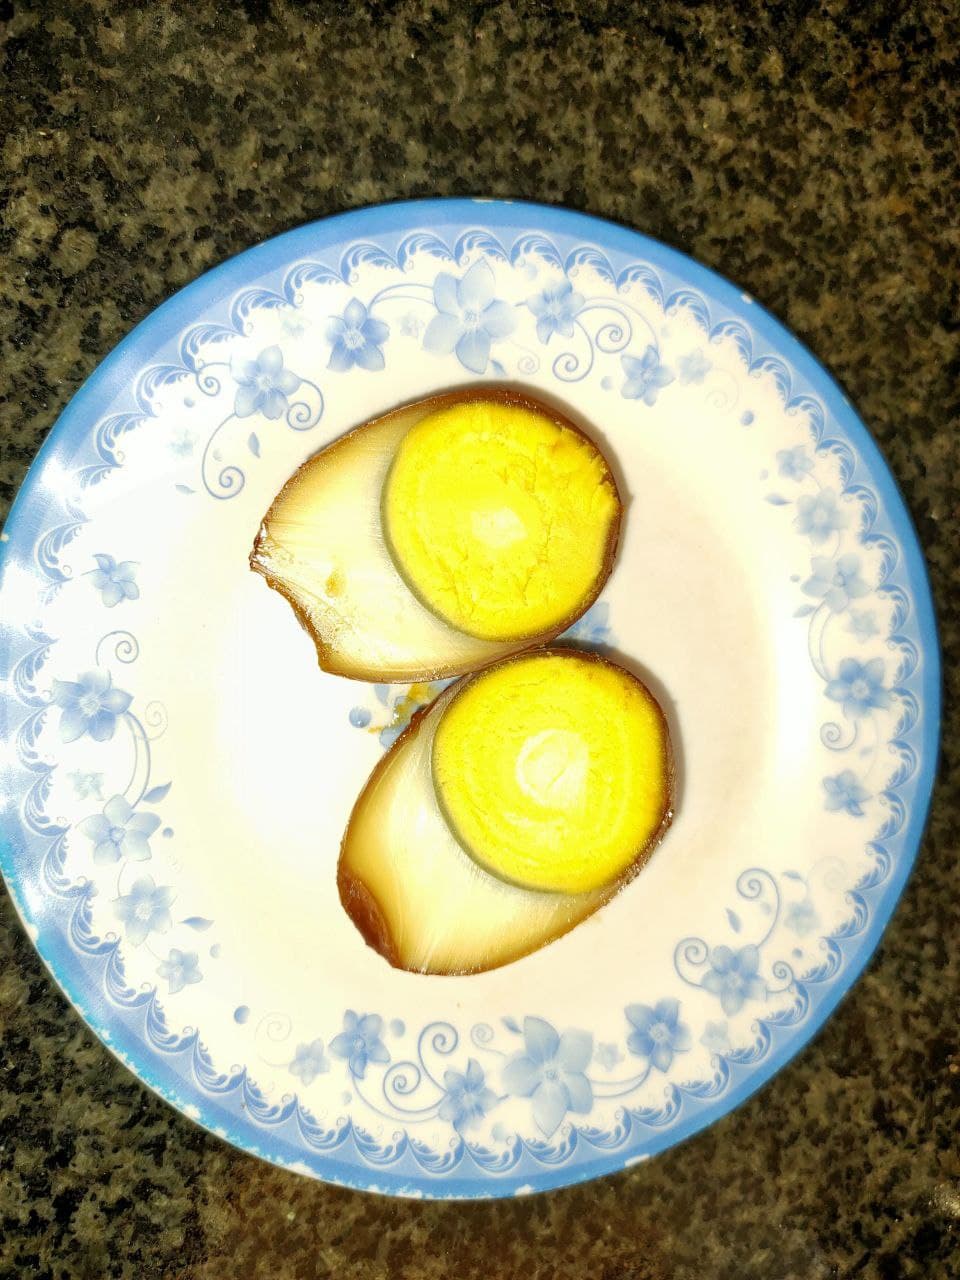 08.Braised Egg